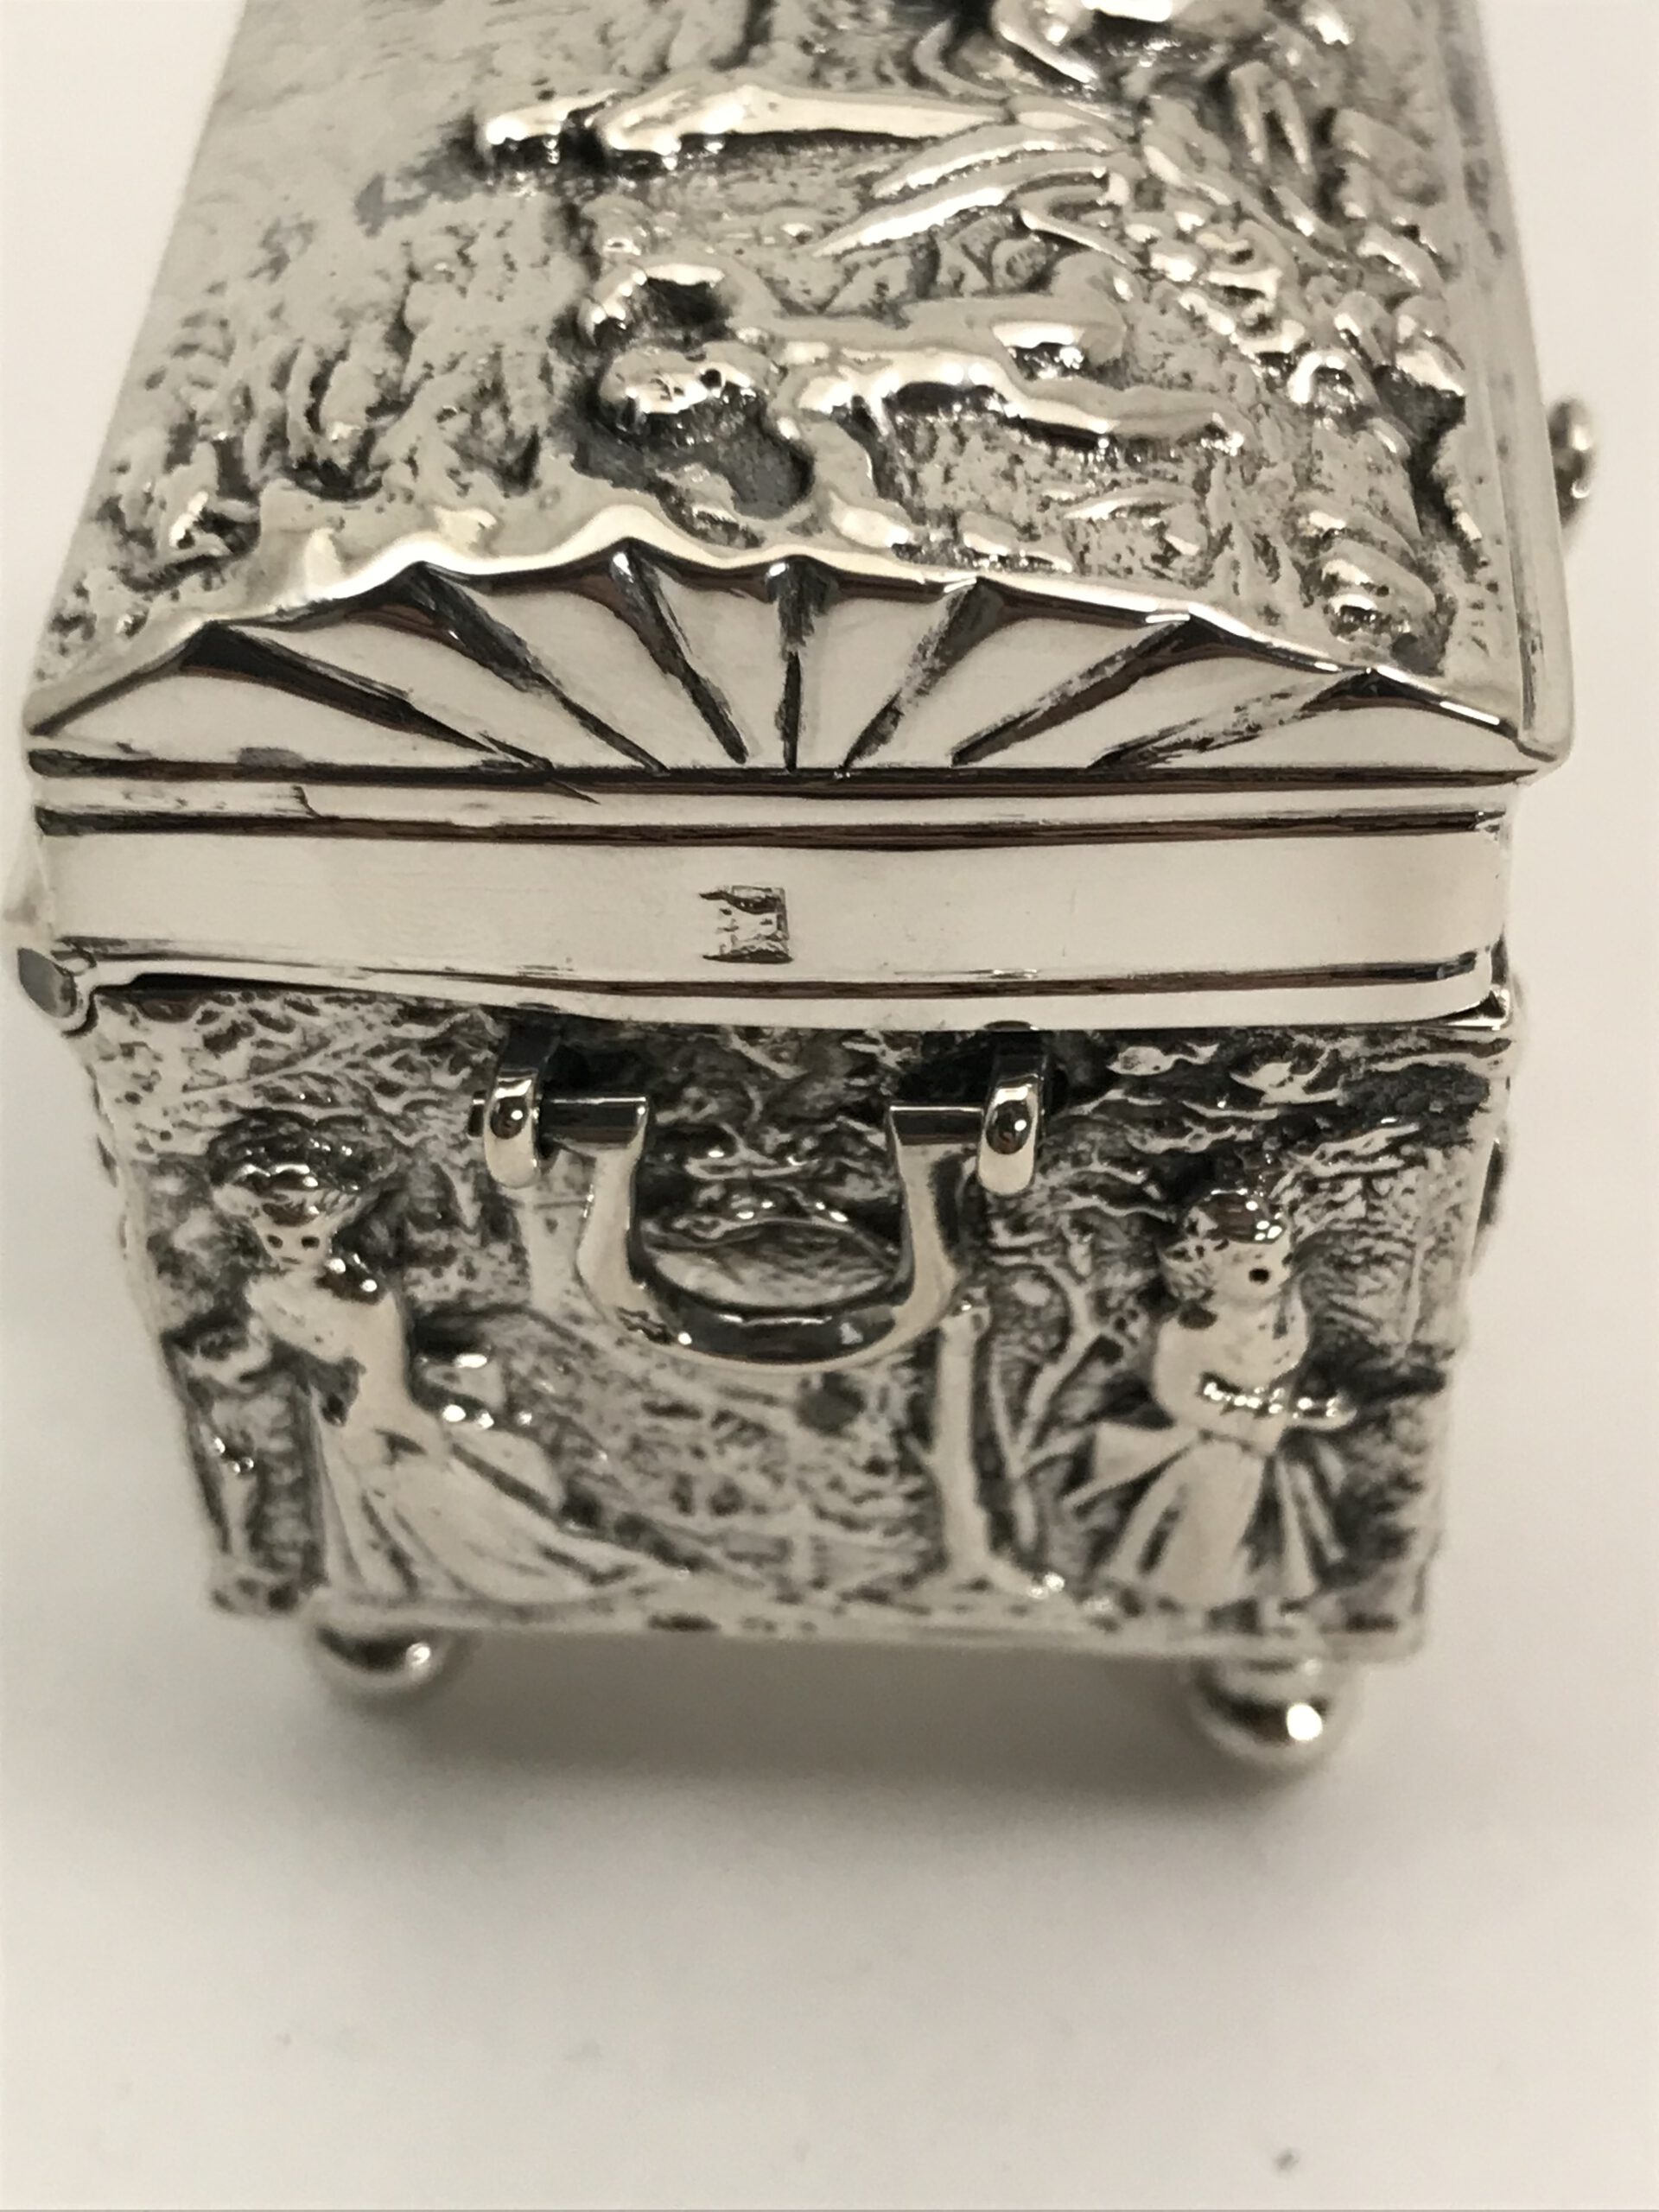 knottekistje, zilver cornelis rietveld schoonhoven 1882 euro 595 haarlemsche zilversmederij k.h.schermerhorn